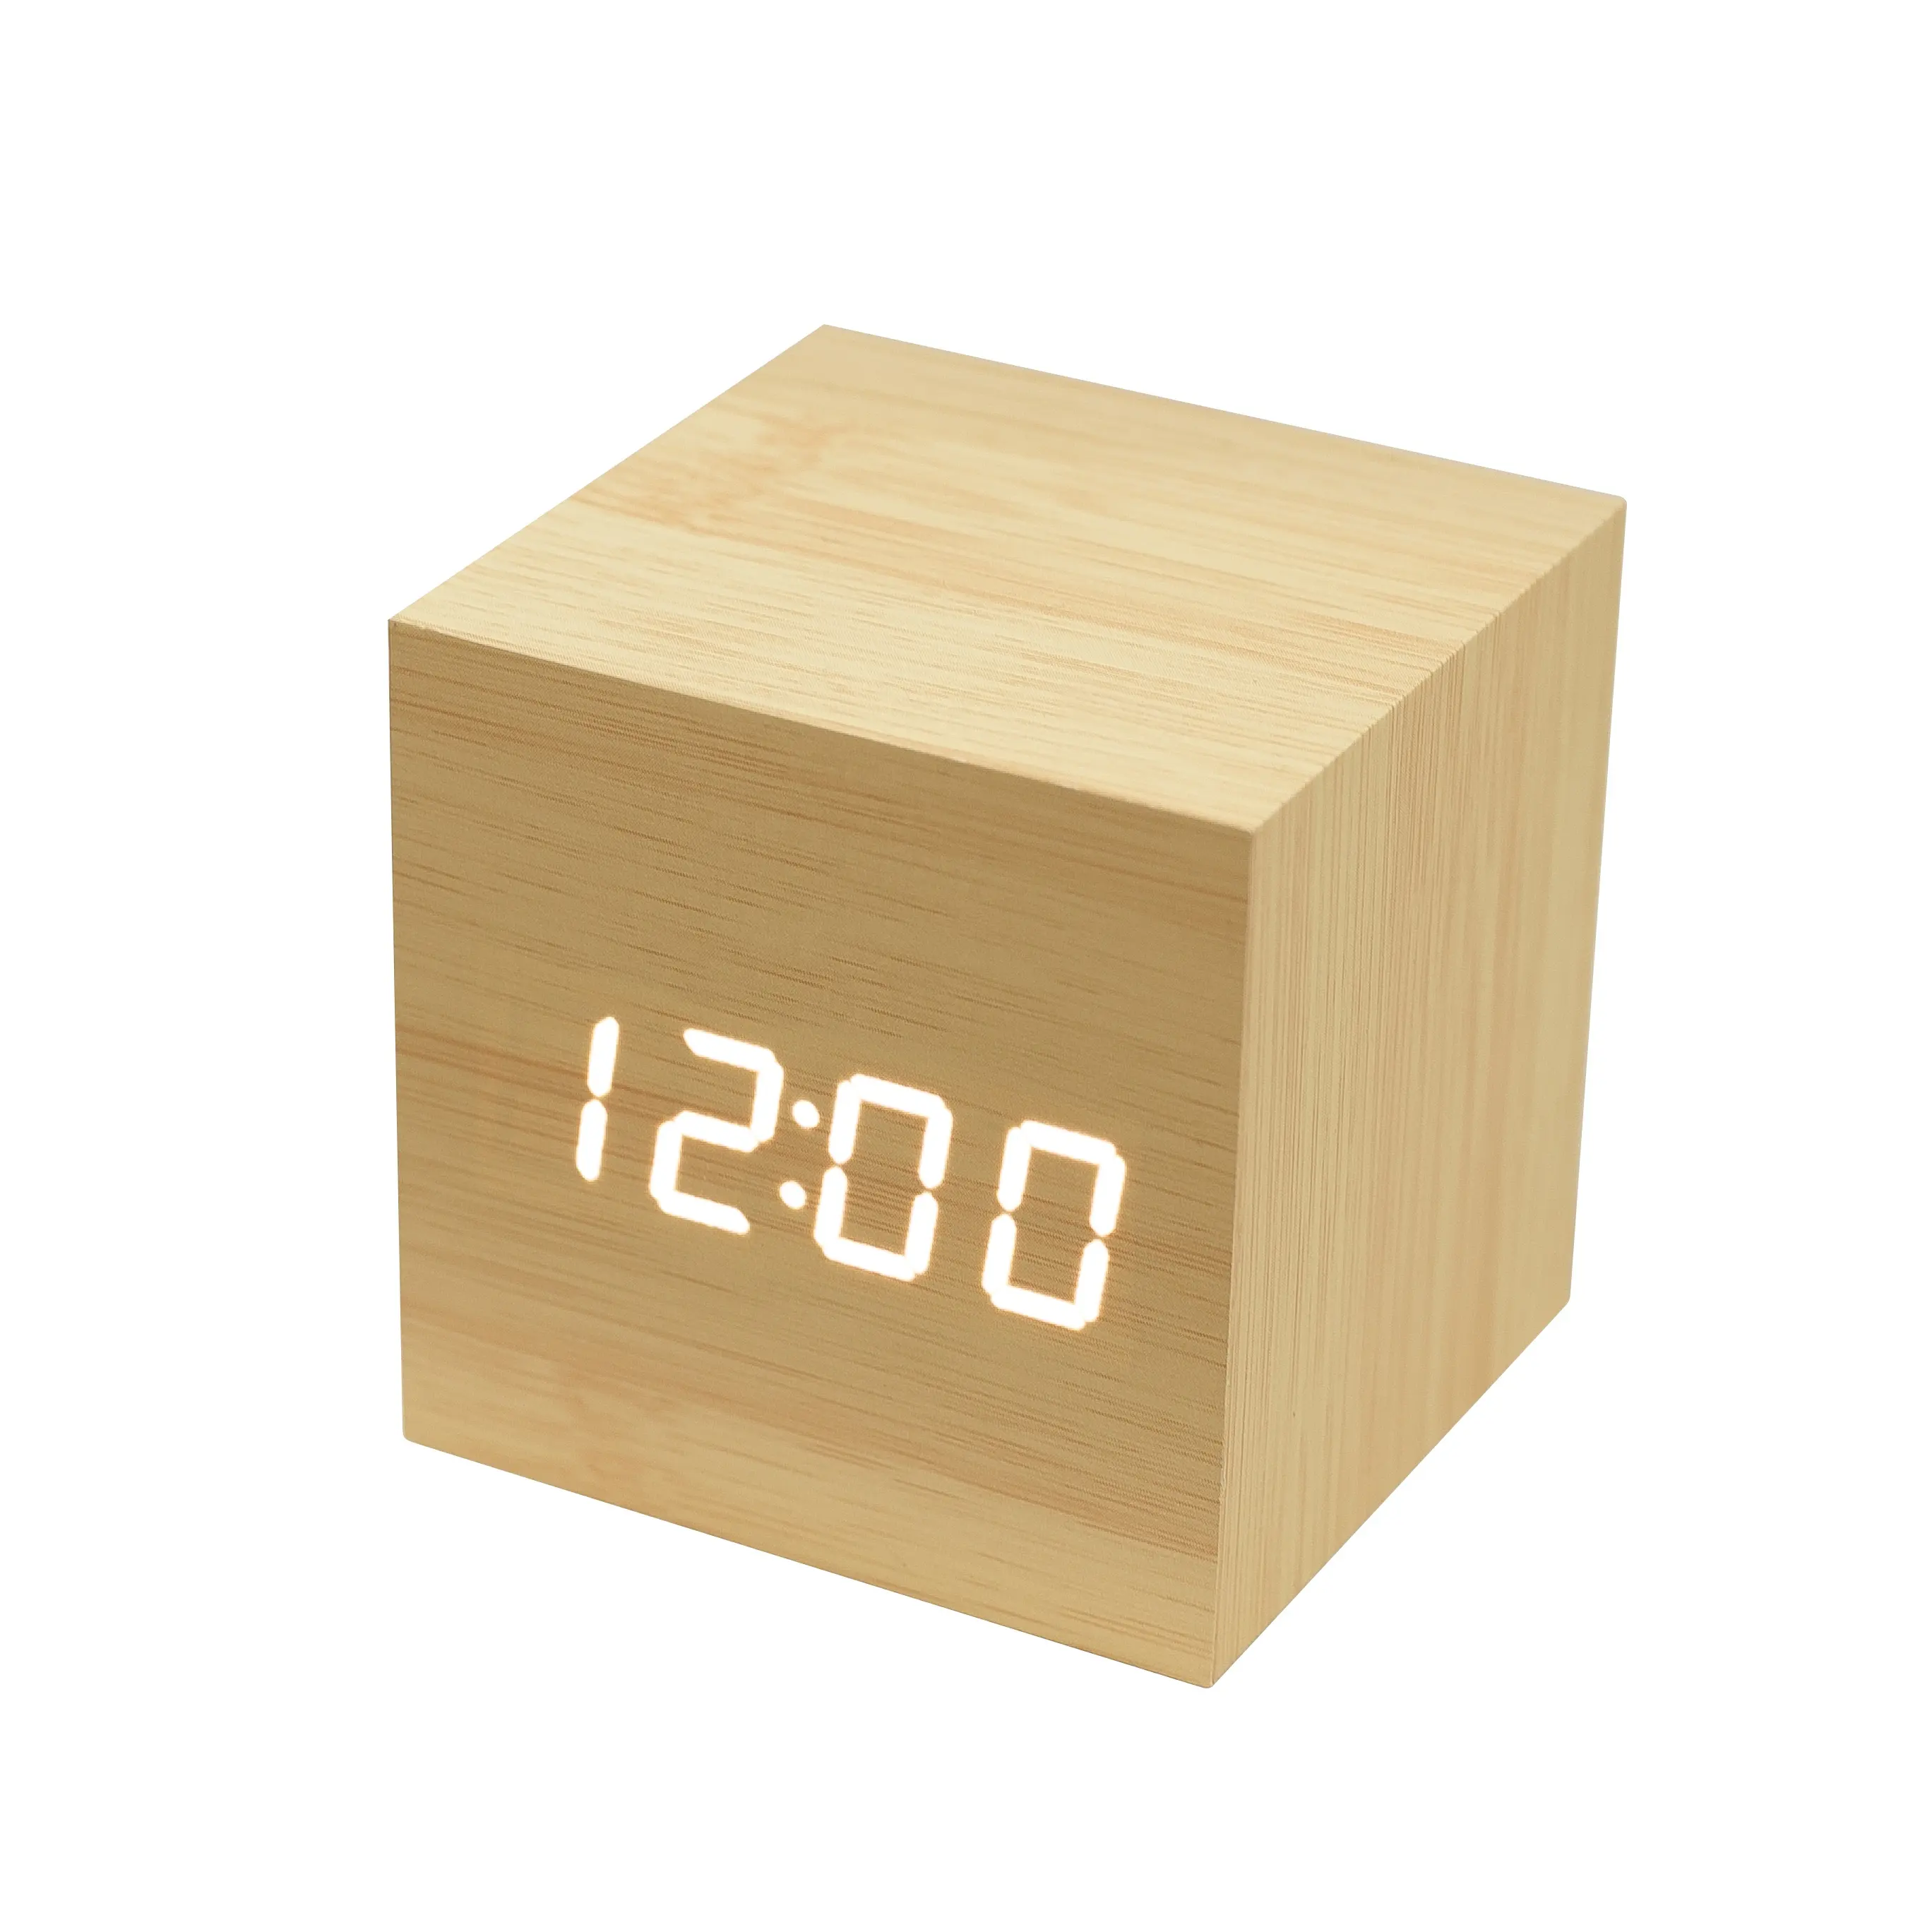 Популярный деревянный светодиодный мини-будильник Evertop, цифровой Куб, лучший подарок, выбор для путешествий, украшение для дома и спальни, Деревянный Будильник